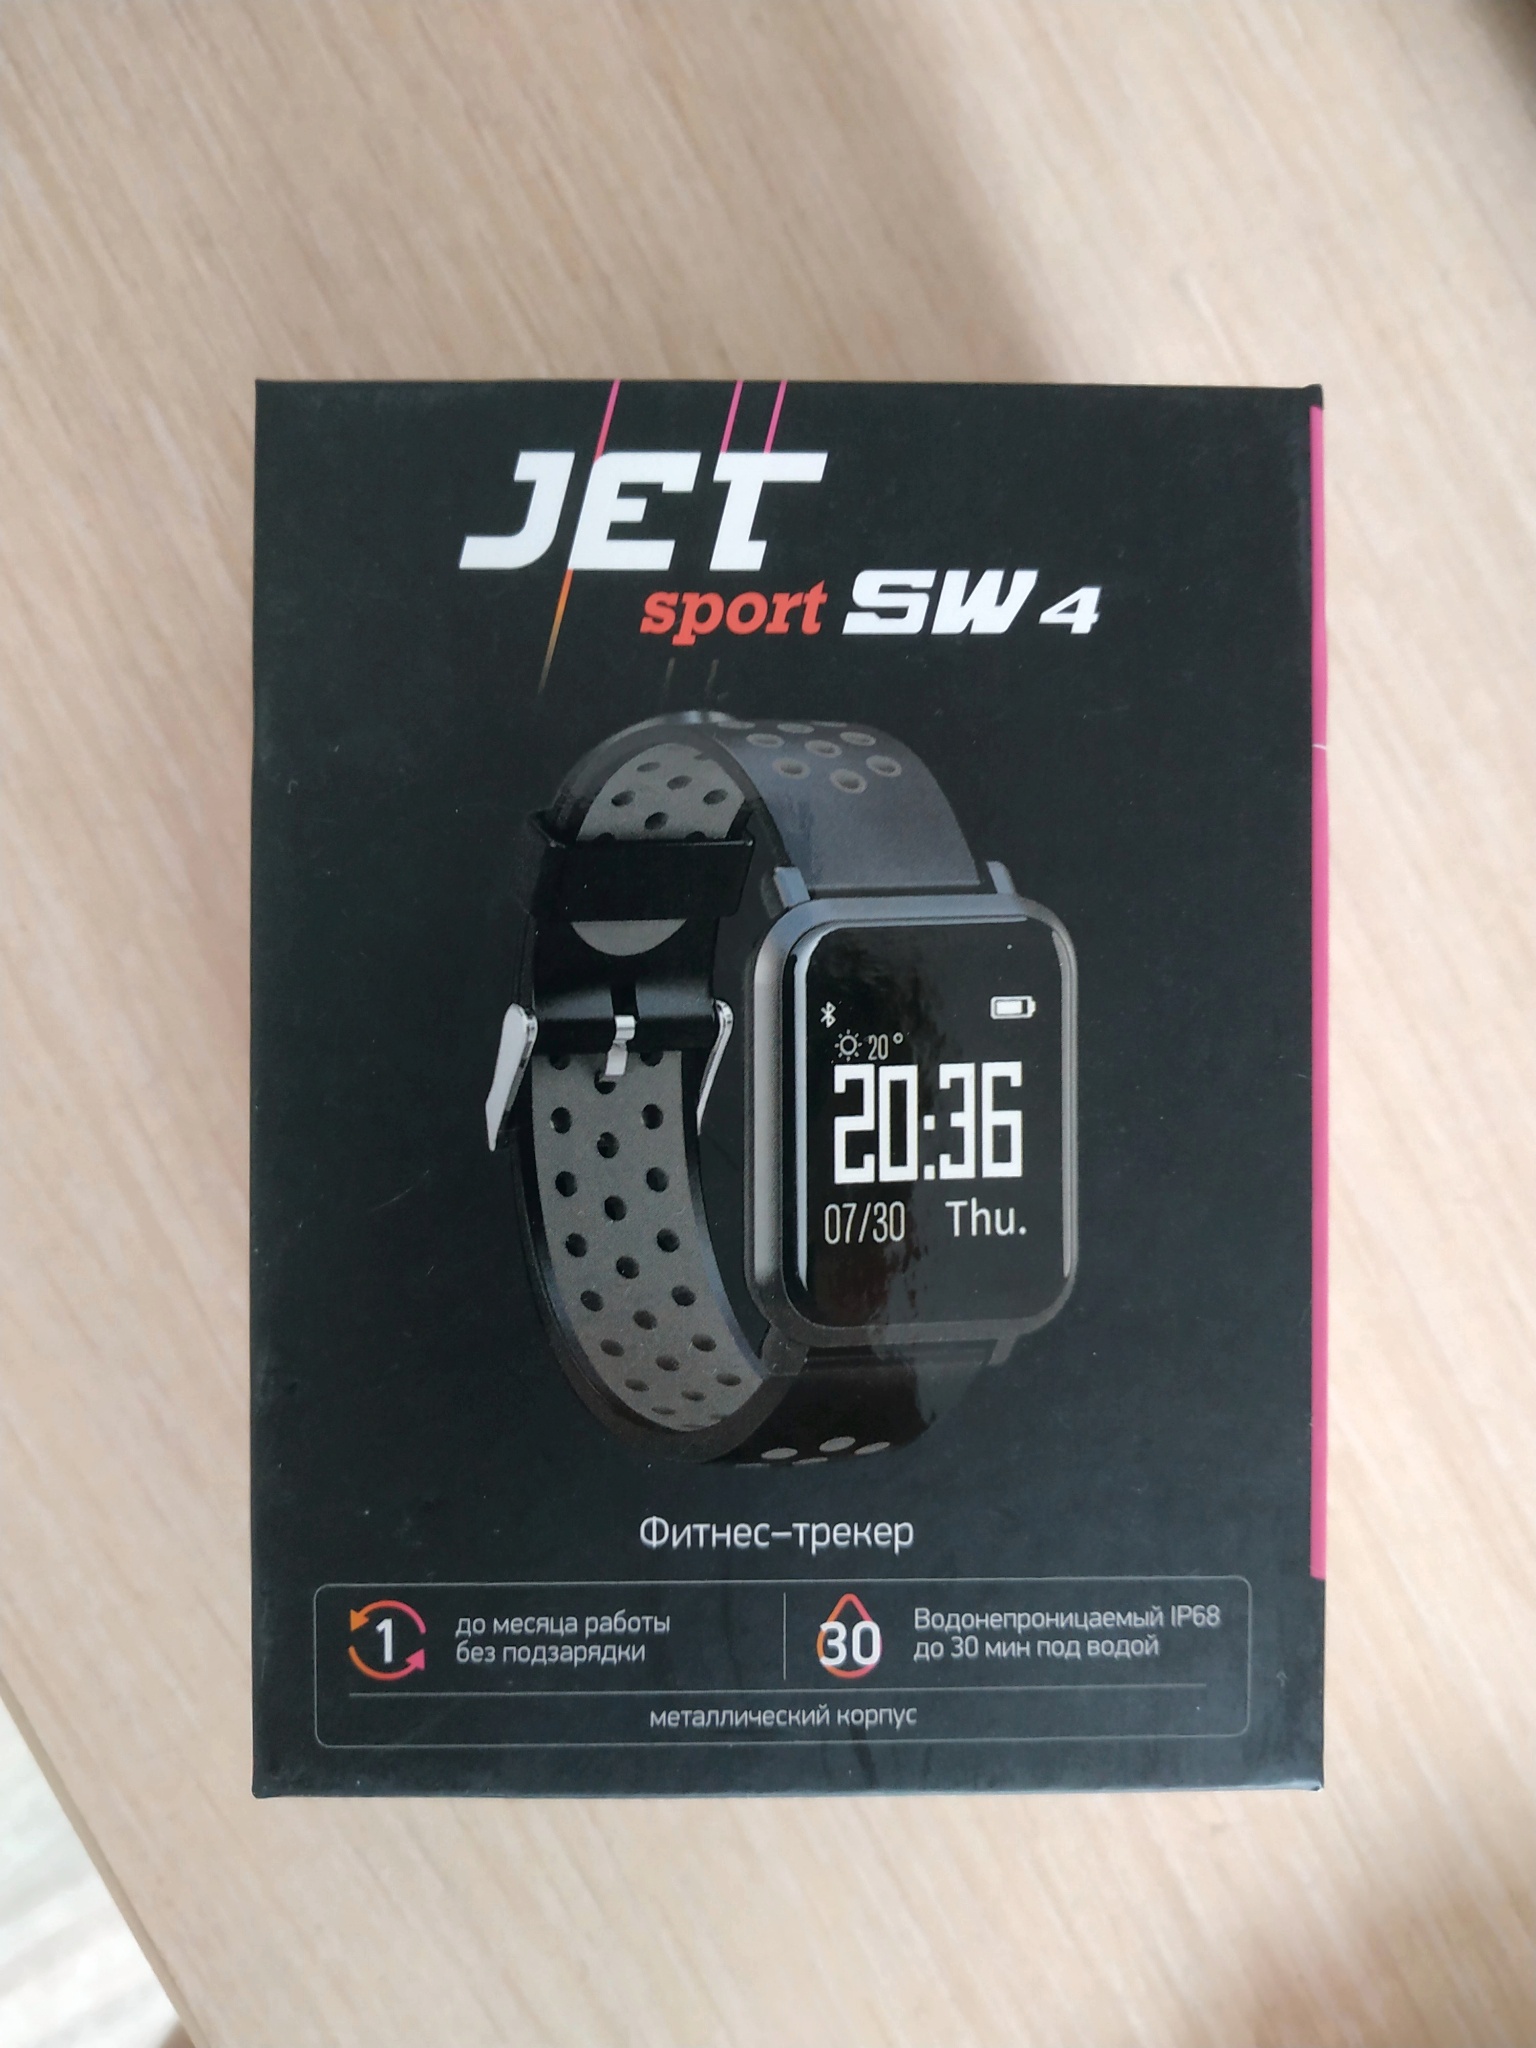 Часы sport sw 4c. Часы Джет спорт sw4. Jet Sport SW-4c. Часы Jet Sport SW-4c. Часы Jet Sport SW-4.